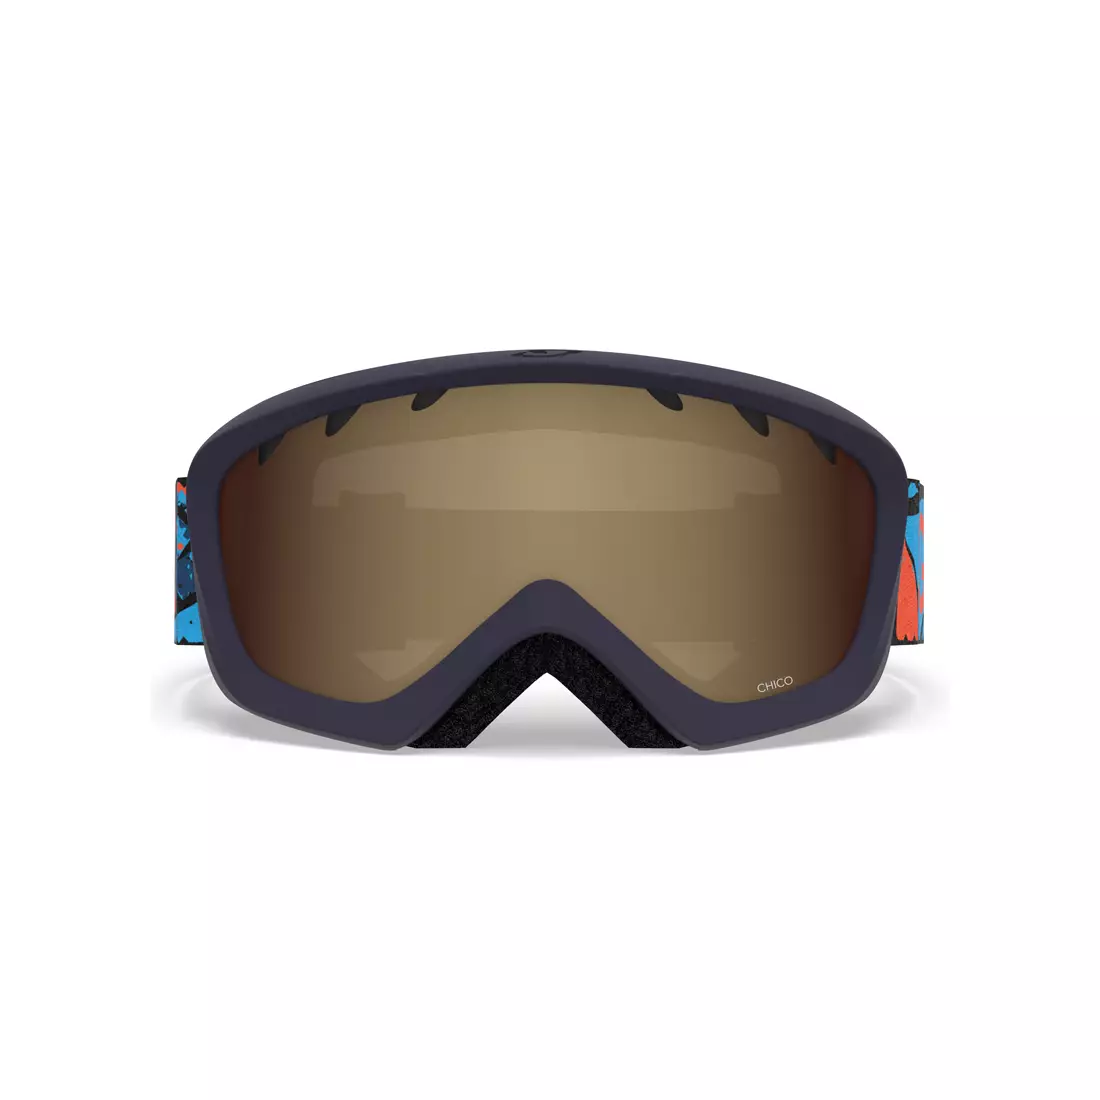 Junior ski / snowboard goggles CHICO BLUE ROCK GR-7094688